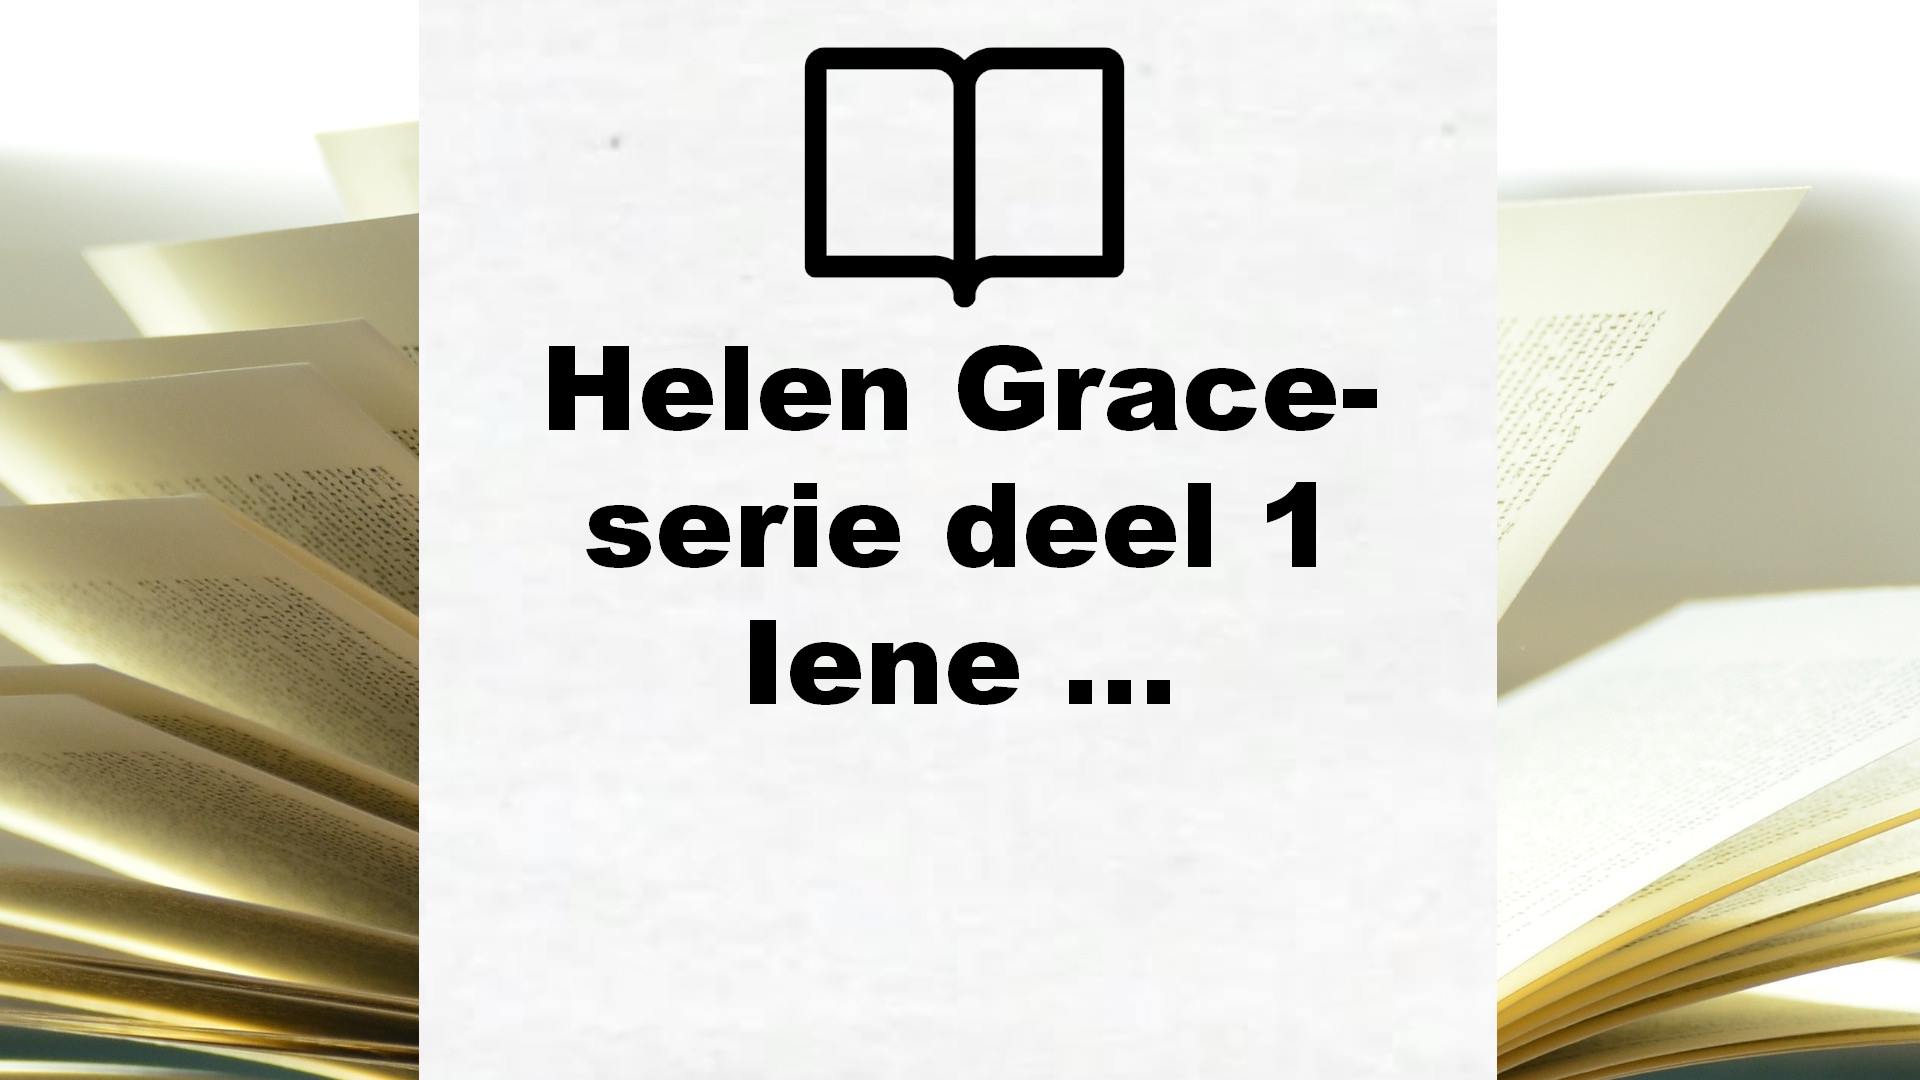 Helen Grace-serie deel 1 Iene miene mutte: De een leeft, de ander sterft. Kies maar. – Boekrecensie